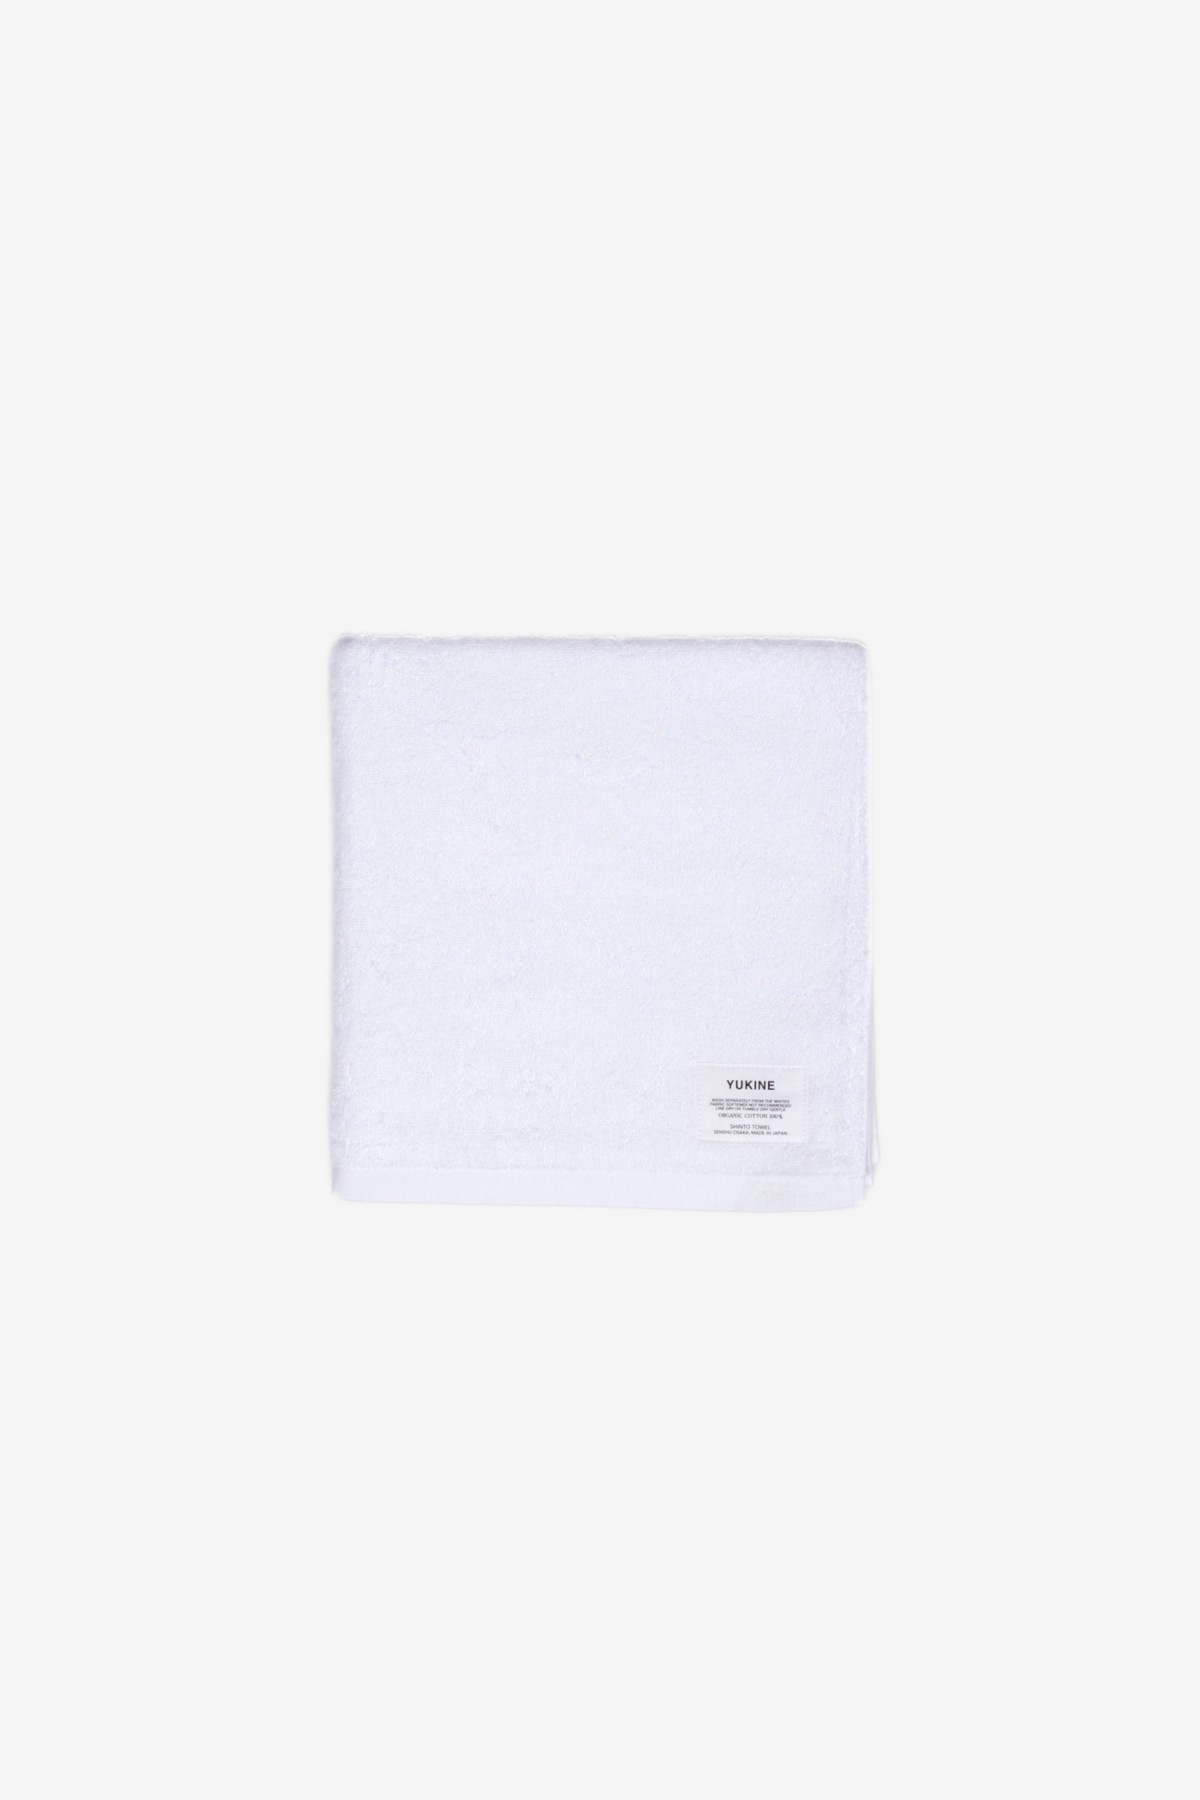 Shinto Yukine  Bath Towel Shiro in White